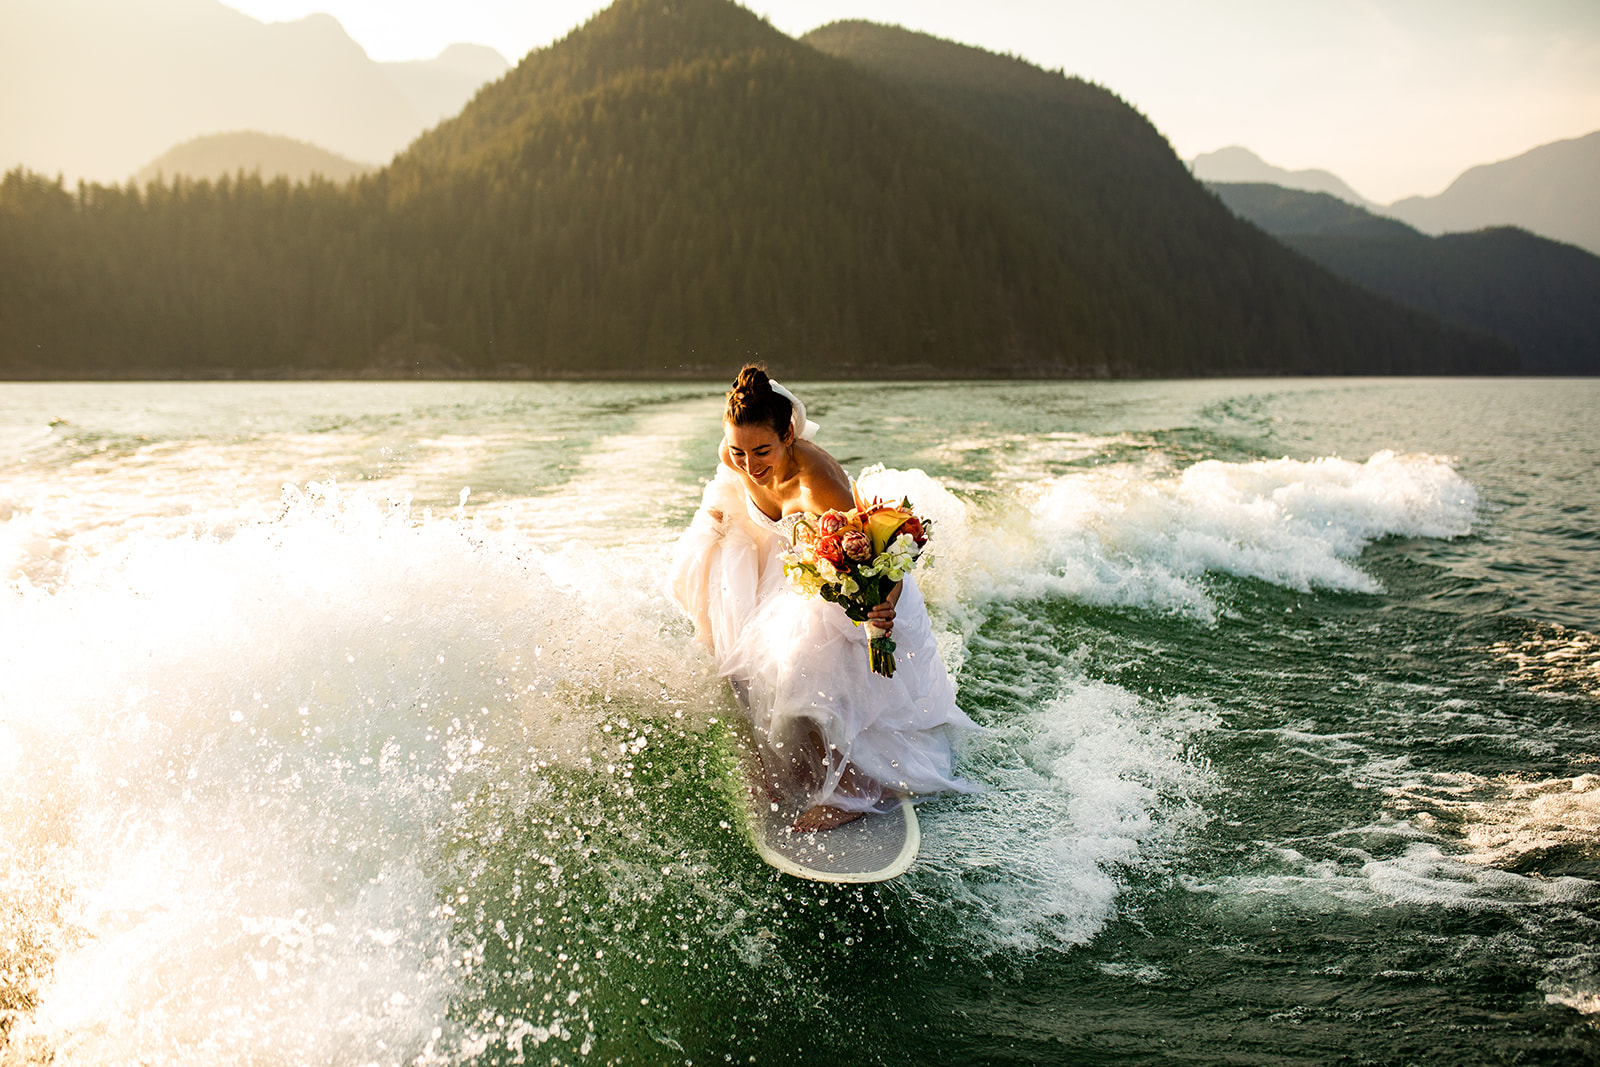 Bride Surfs on Bitchen Wave with Bouquet 